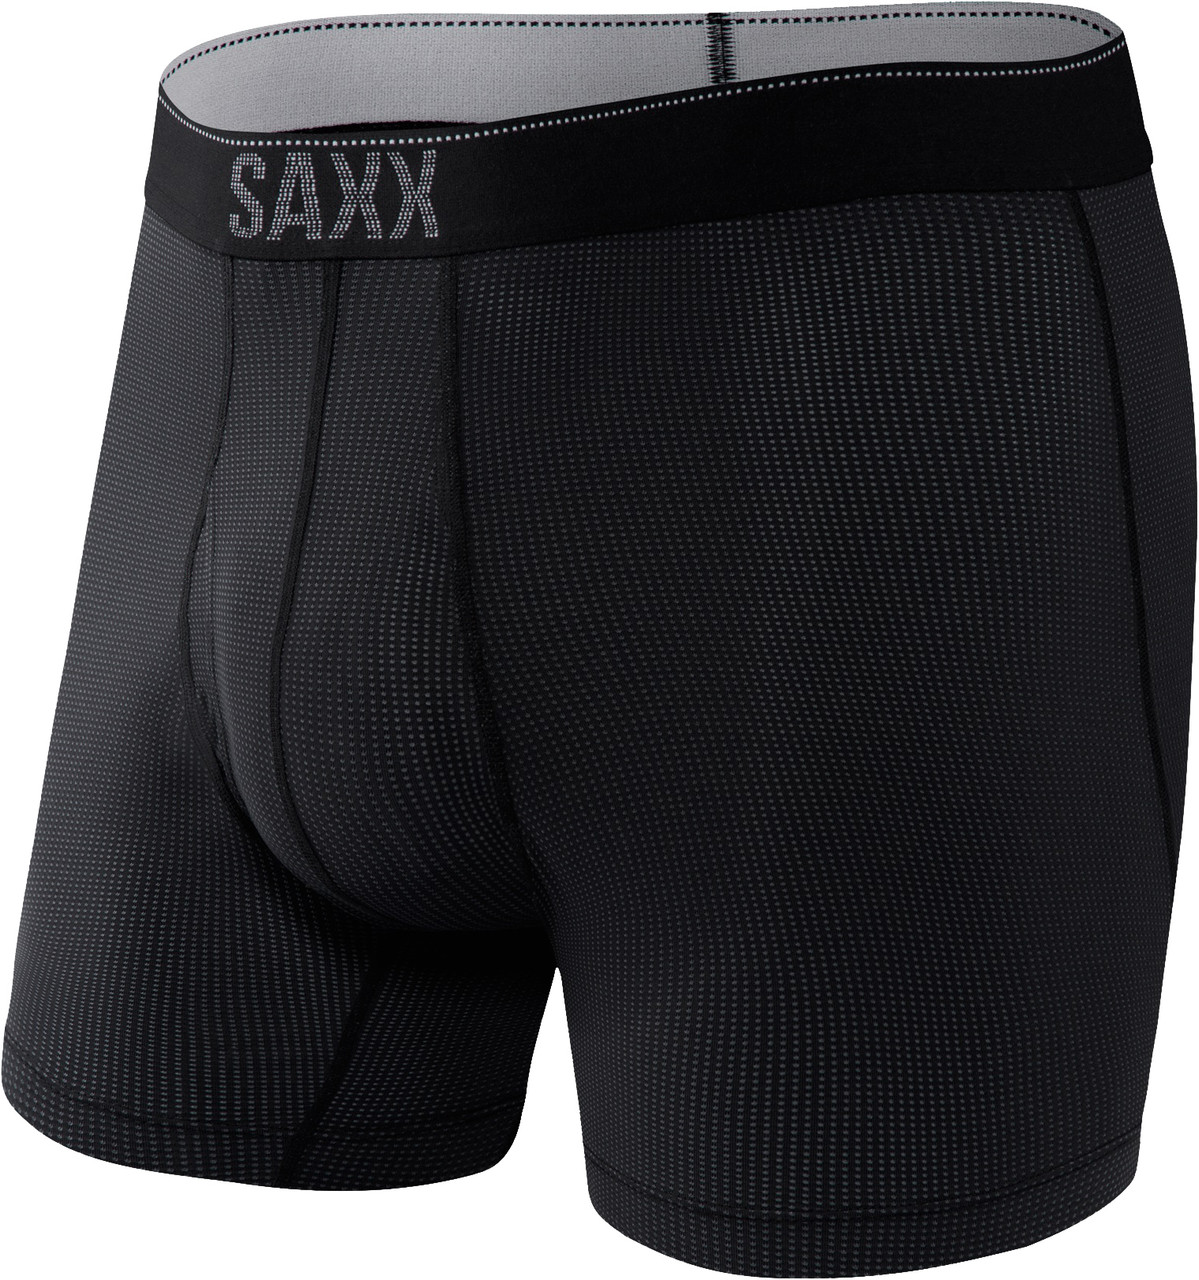 Saxx Quest Quick Dry Mesh Boxer Briefs - Men's